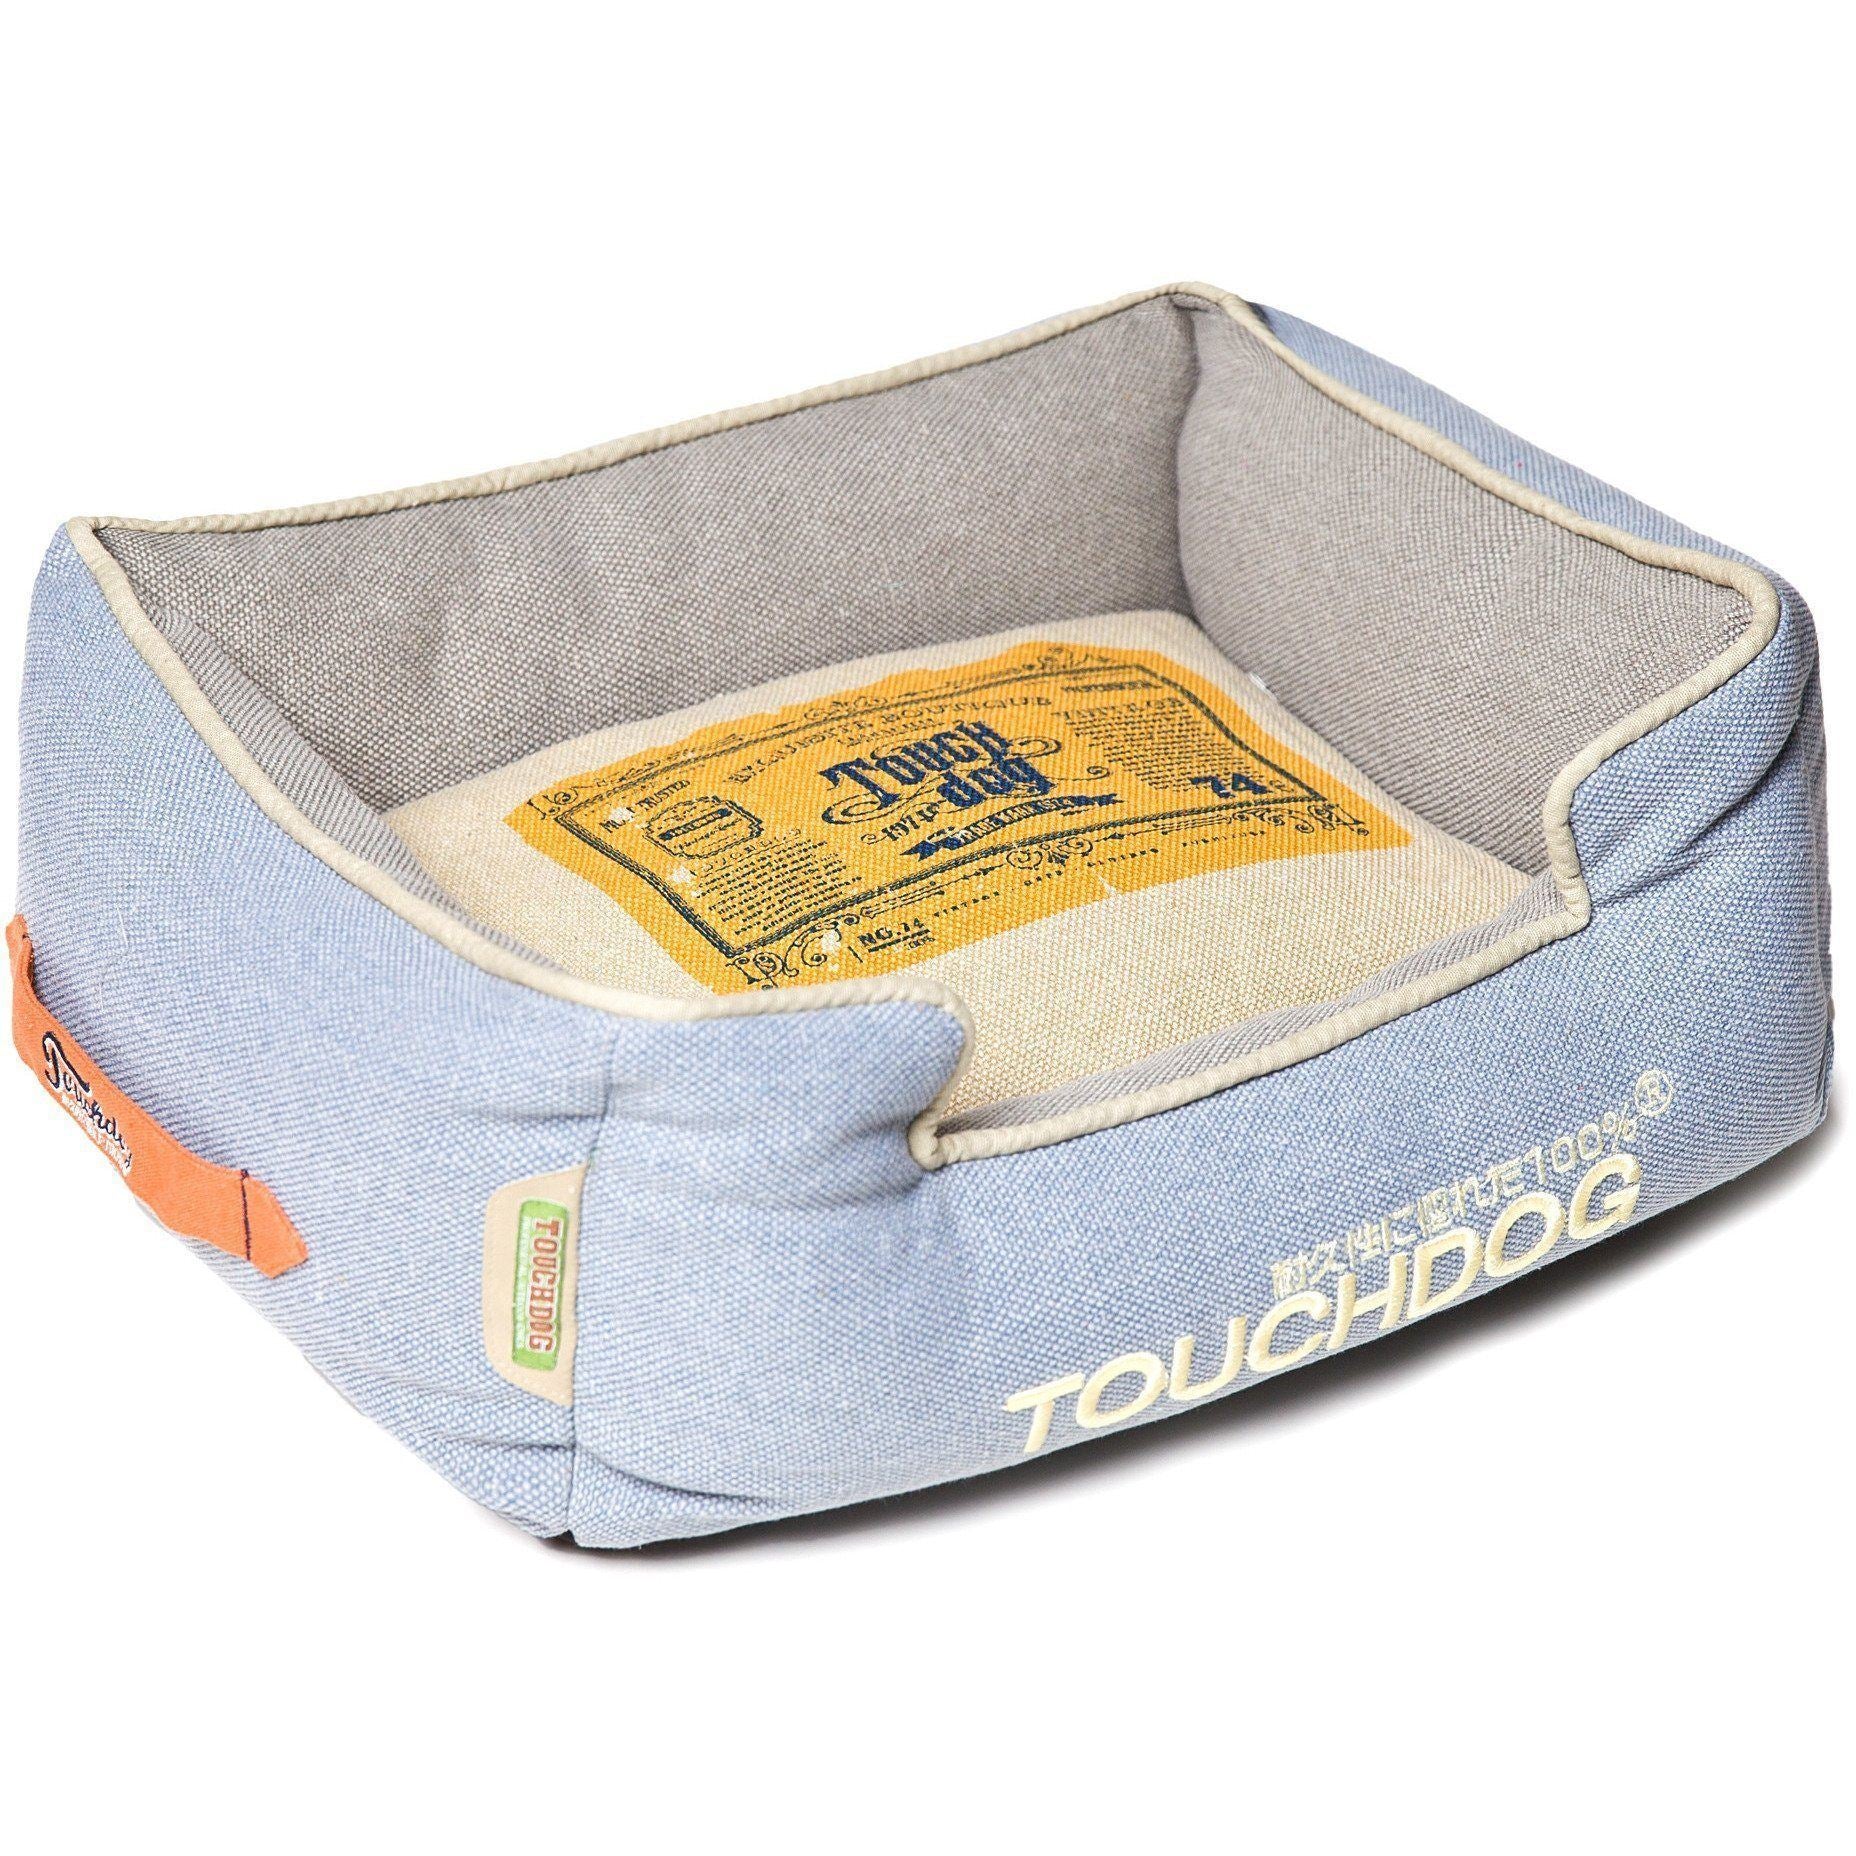 Touchdog ® Original Denim Reversible Designer Rectangular Dog Bed Denim Blue, Grey, Beige, White 